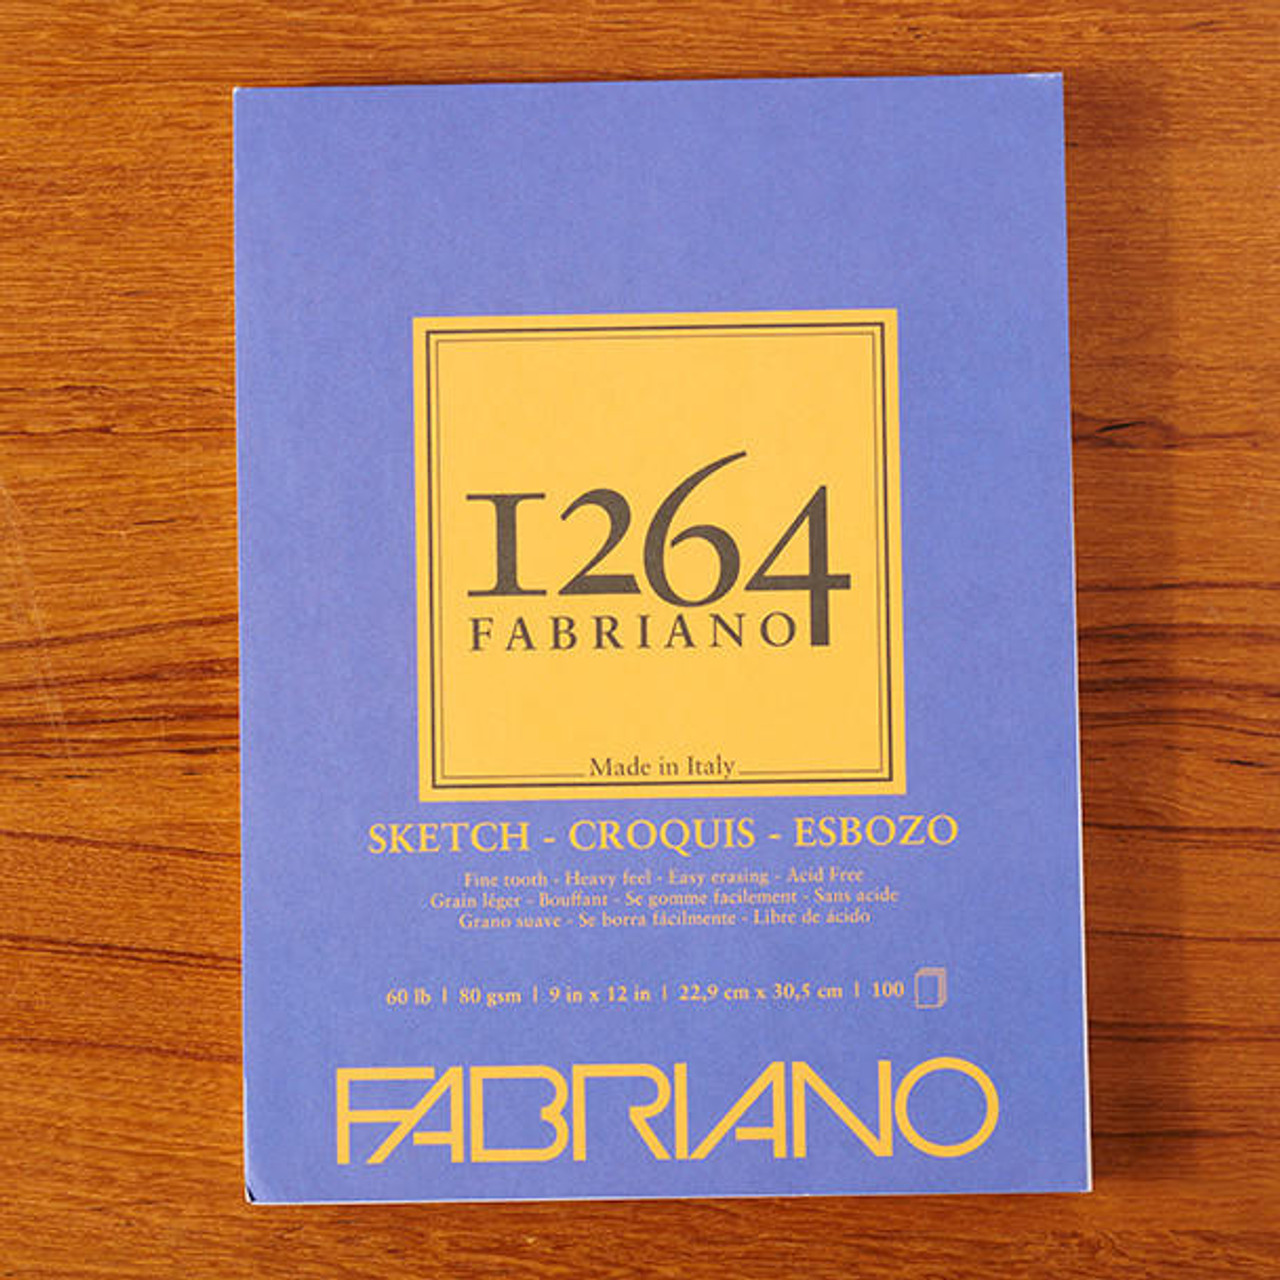 Fabriano Mixed Media Pad, 9 x 12